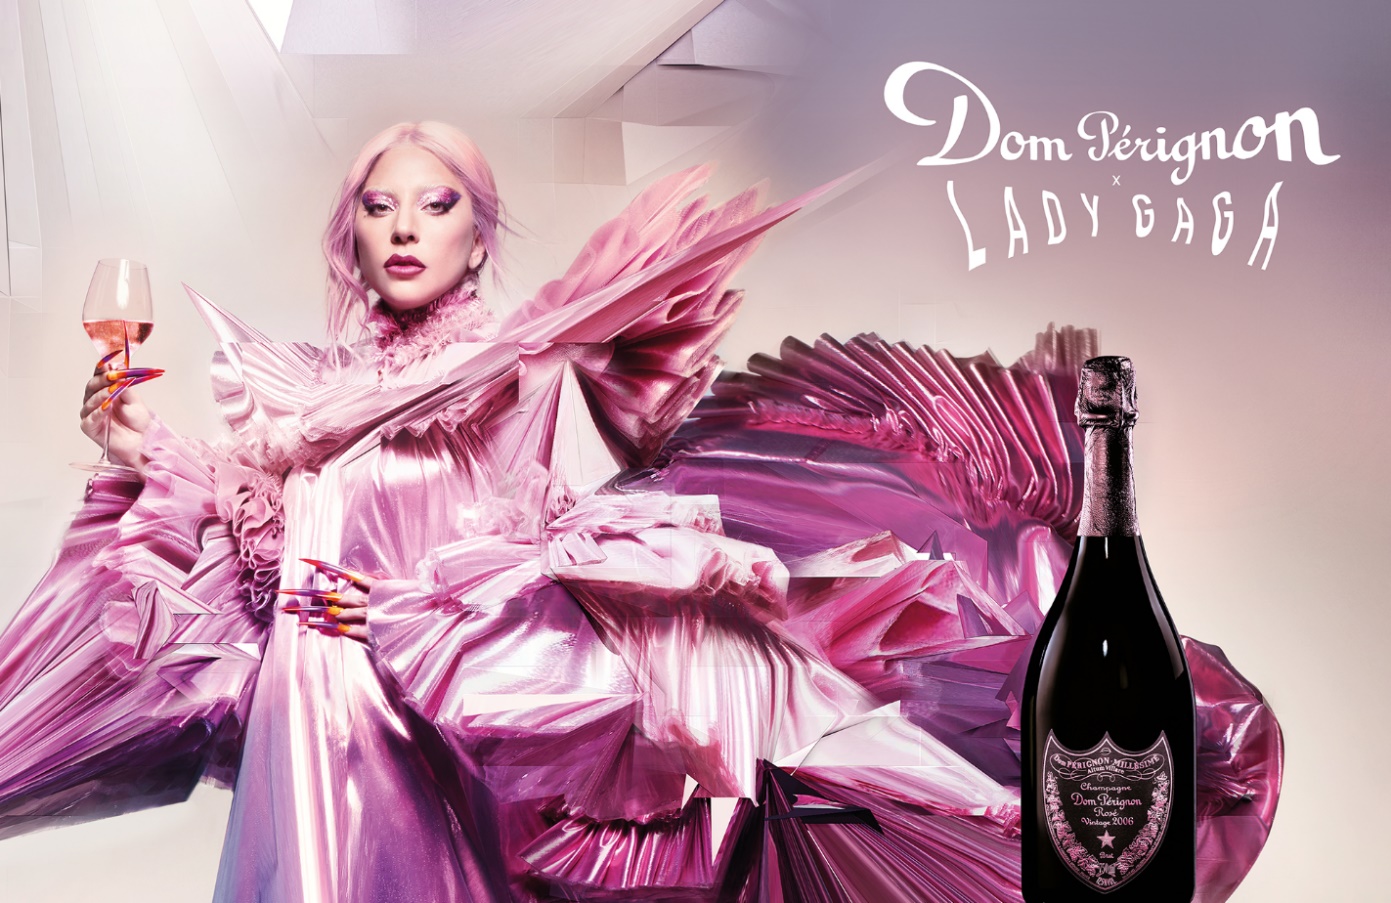 Dom Pérignon Champagne - Dom Pérignon Vintage 2005 Rosé Lady Gaga Limited  Edition Sculpture 3L Jéroboam